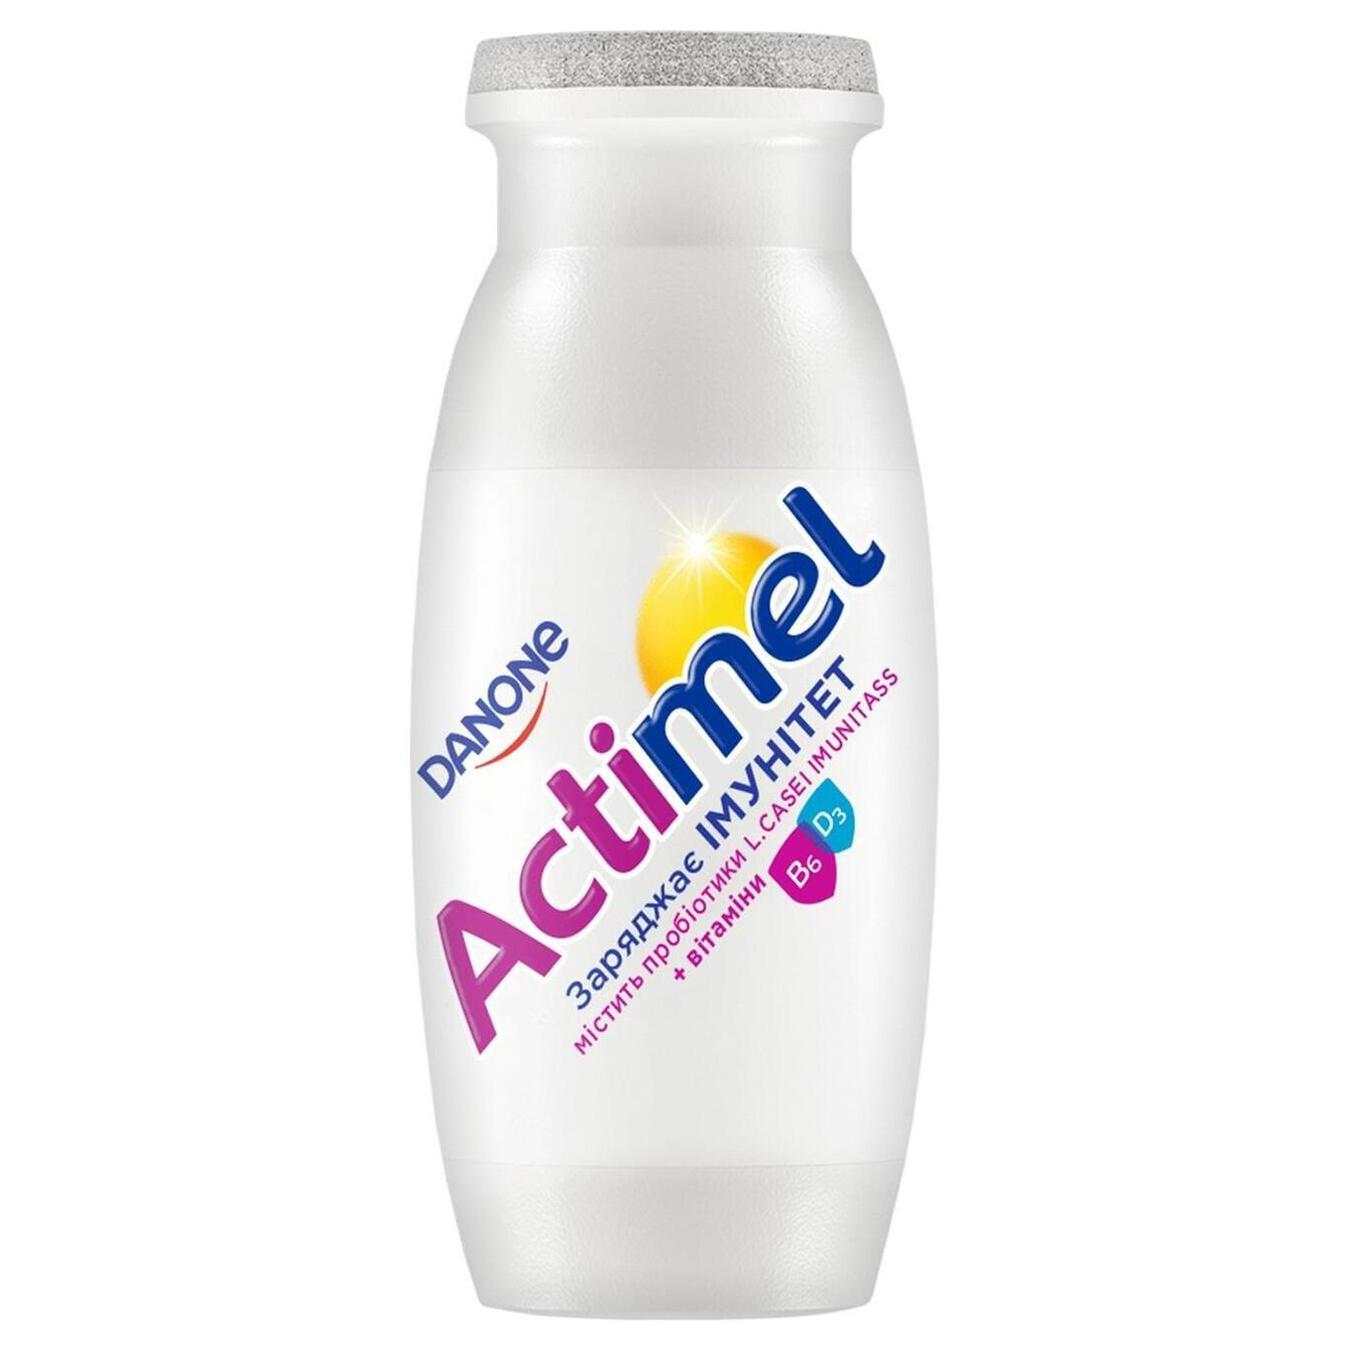 Продукт кисломолочный Actimel сладкий 1,5% 100г